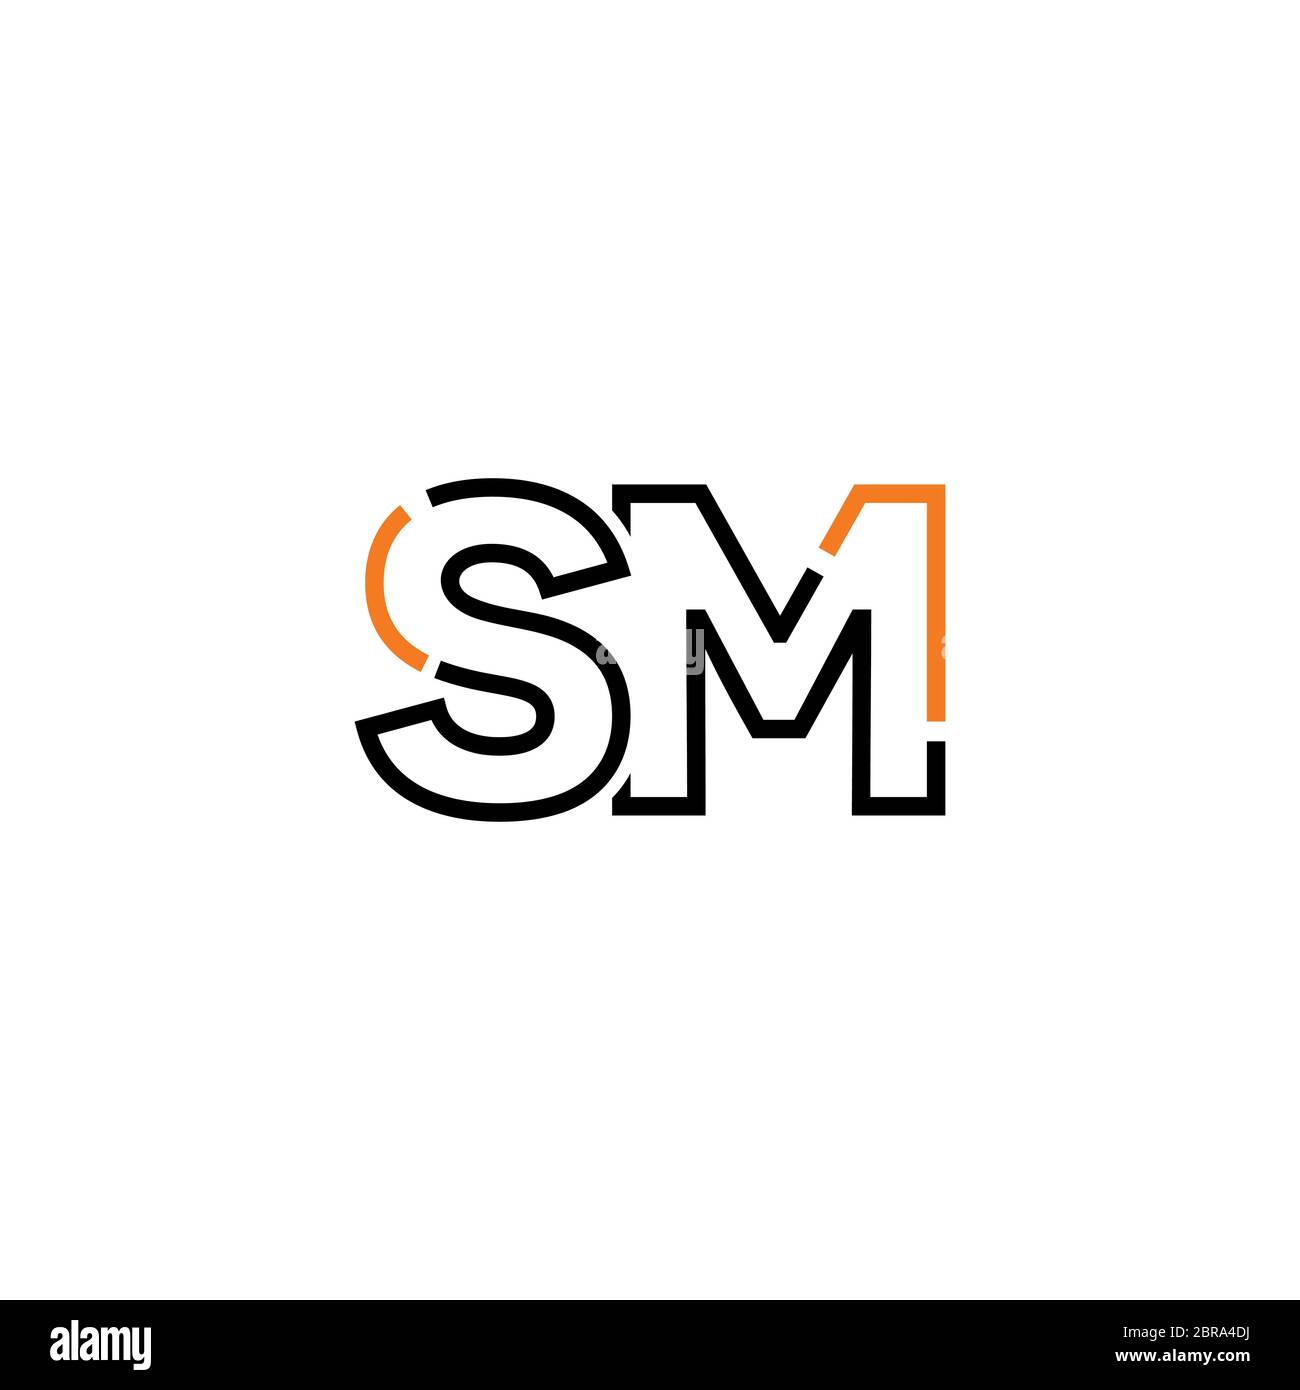 Update 87+ sm logo design hd latest - ceg.edu.vn